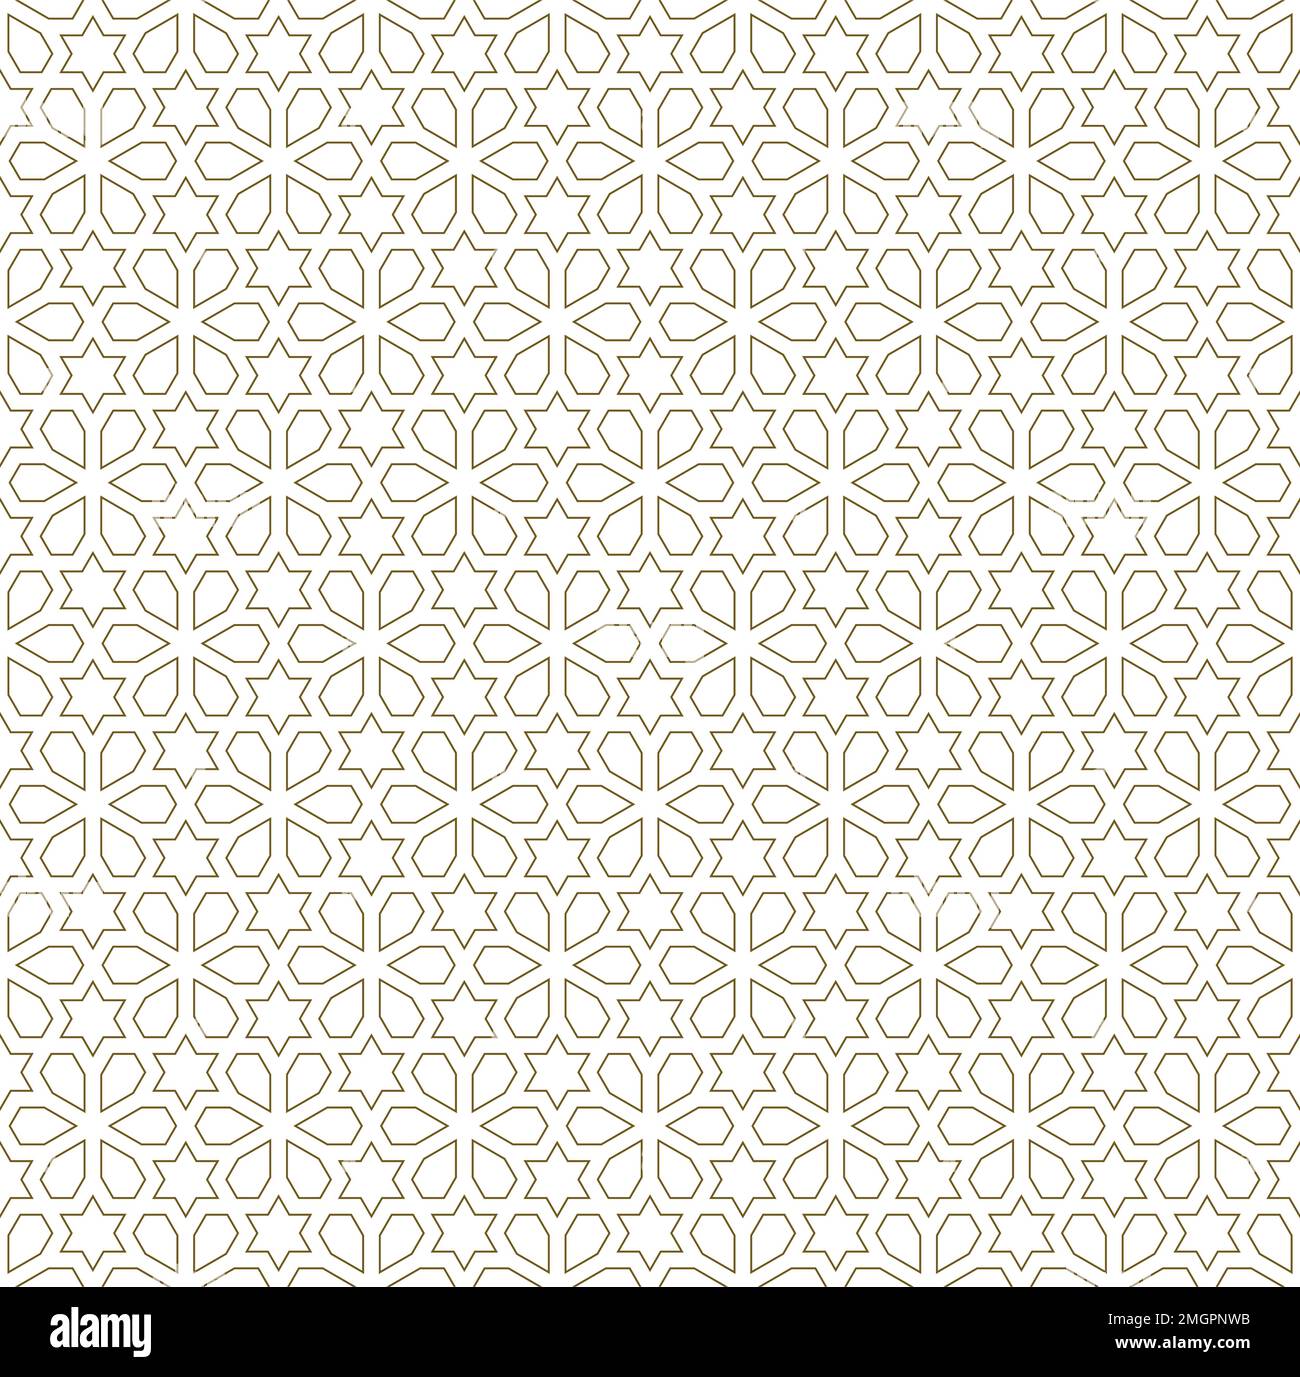 Ornamento geometrico senza cuciture basato sulle tradizionali linee marroni dell'arte islamica. Per tessuti, tessuti, copertine, carta da imballaggio, sfondo e lasercutting. Illustrazione Vettoriale